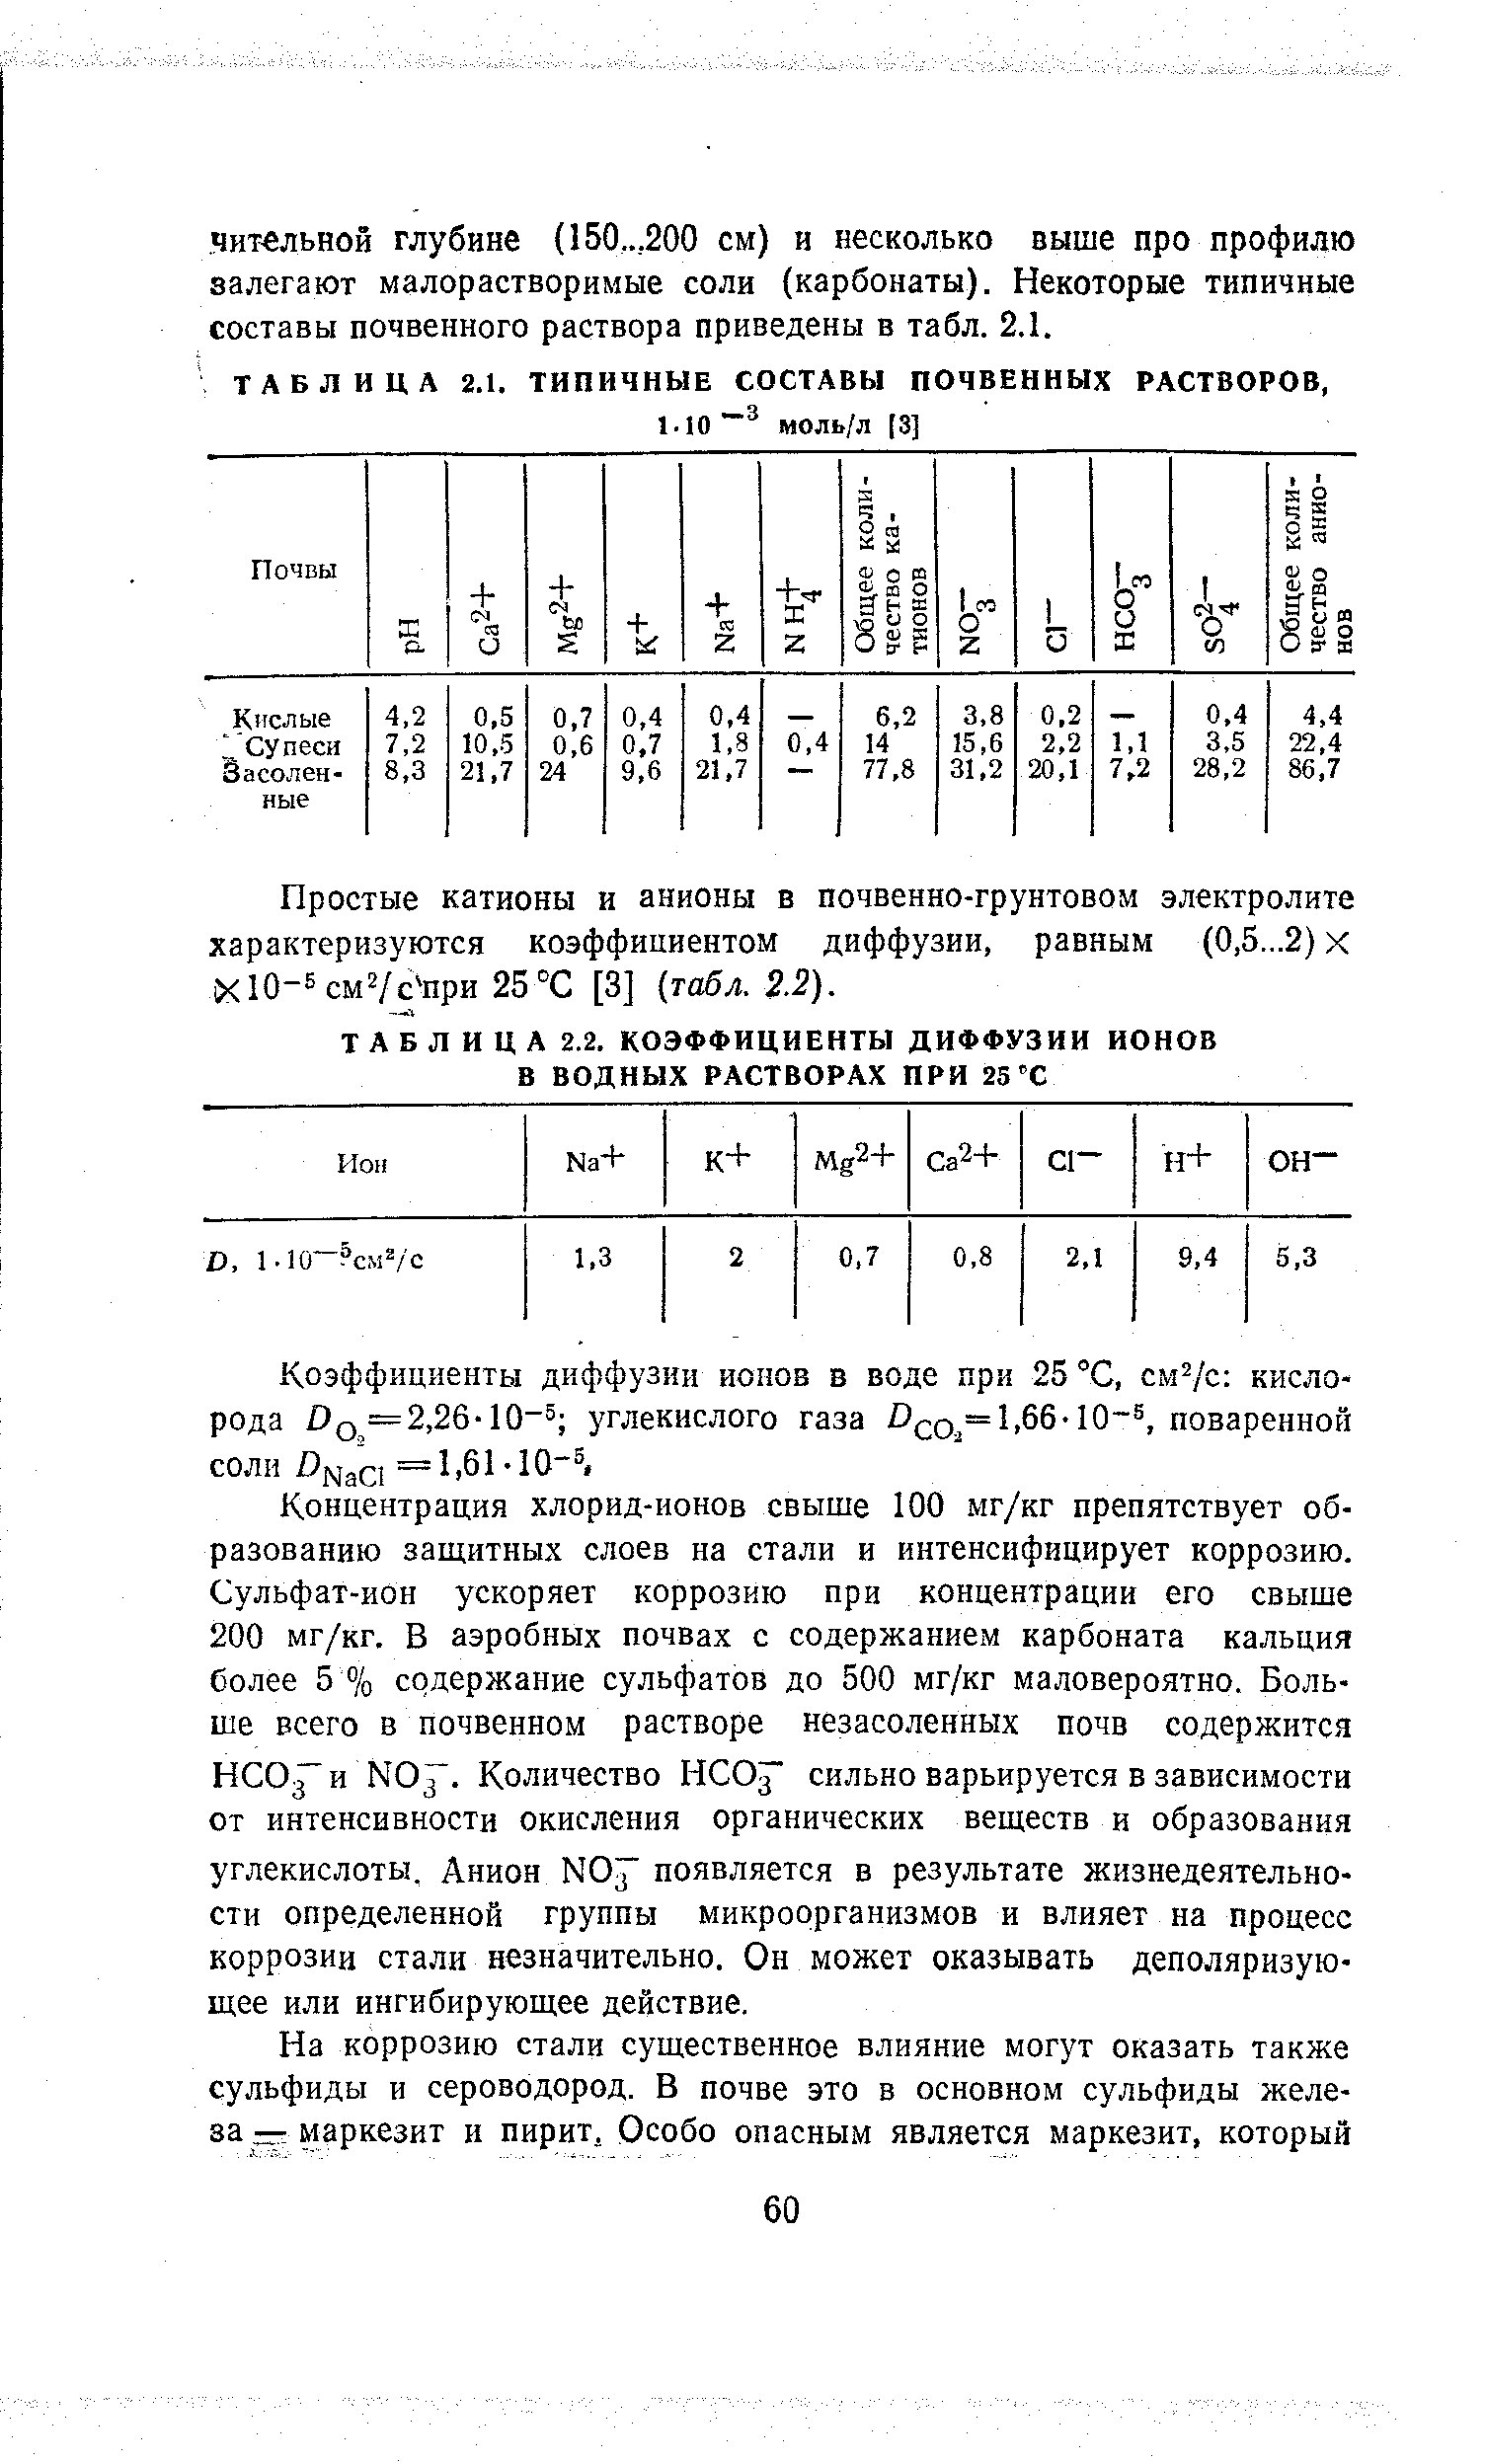 Простые катионы и анионы в почвенно-грунтовом электролите характеризуются коэффициентом диффузии, равным (0,5, 2) х ХЮ-=см2/с при 25°С [3] табл. 2.2).